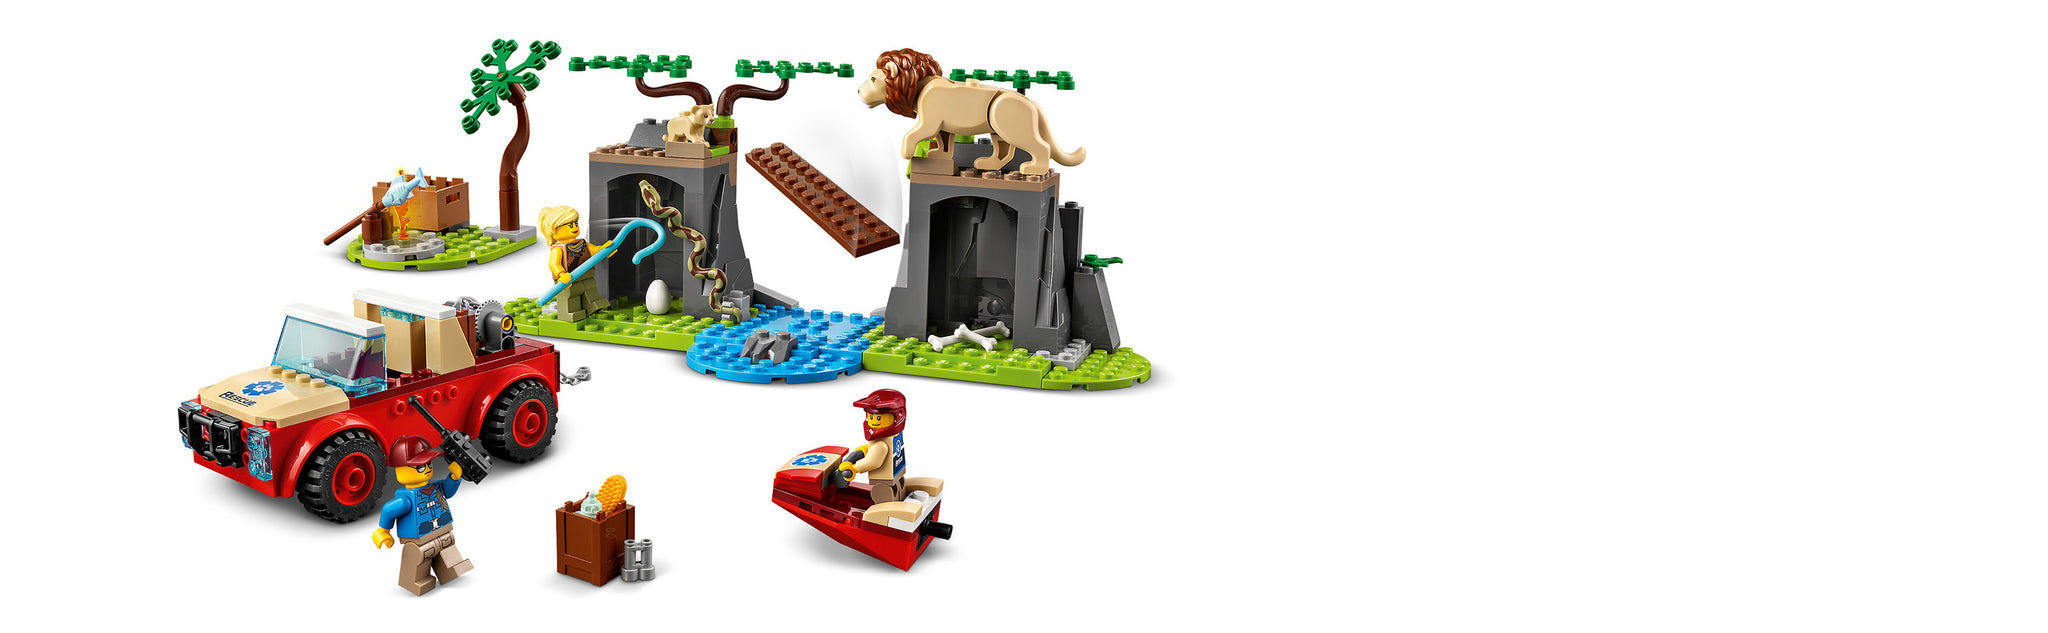 LEGO 60301 Rettungs-Geländewagen